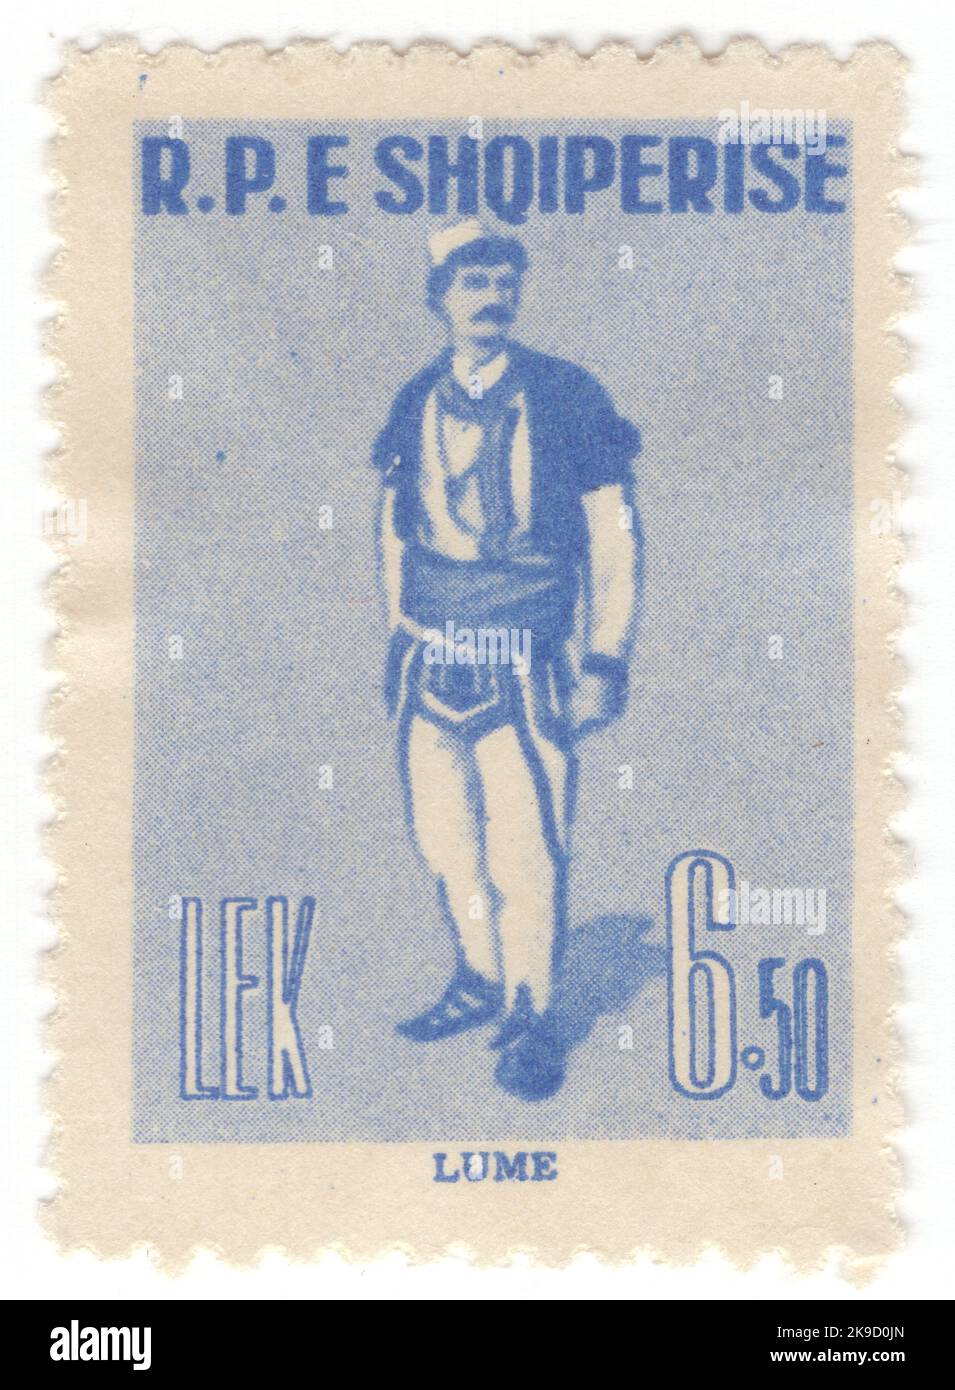 ALBANIEN - 1961. April 28: Eine ultramarine Briefmarke mit 6,50 Leks, die traditionelle albanische Kostüme zeigt: Mann aus Lume Stockfoto